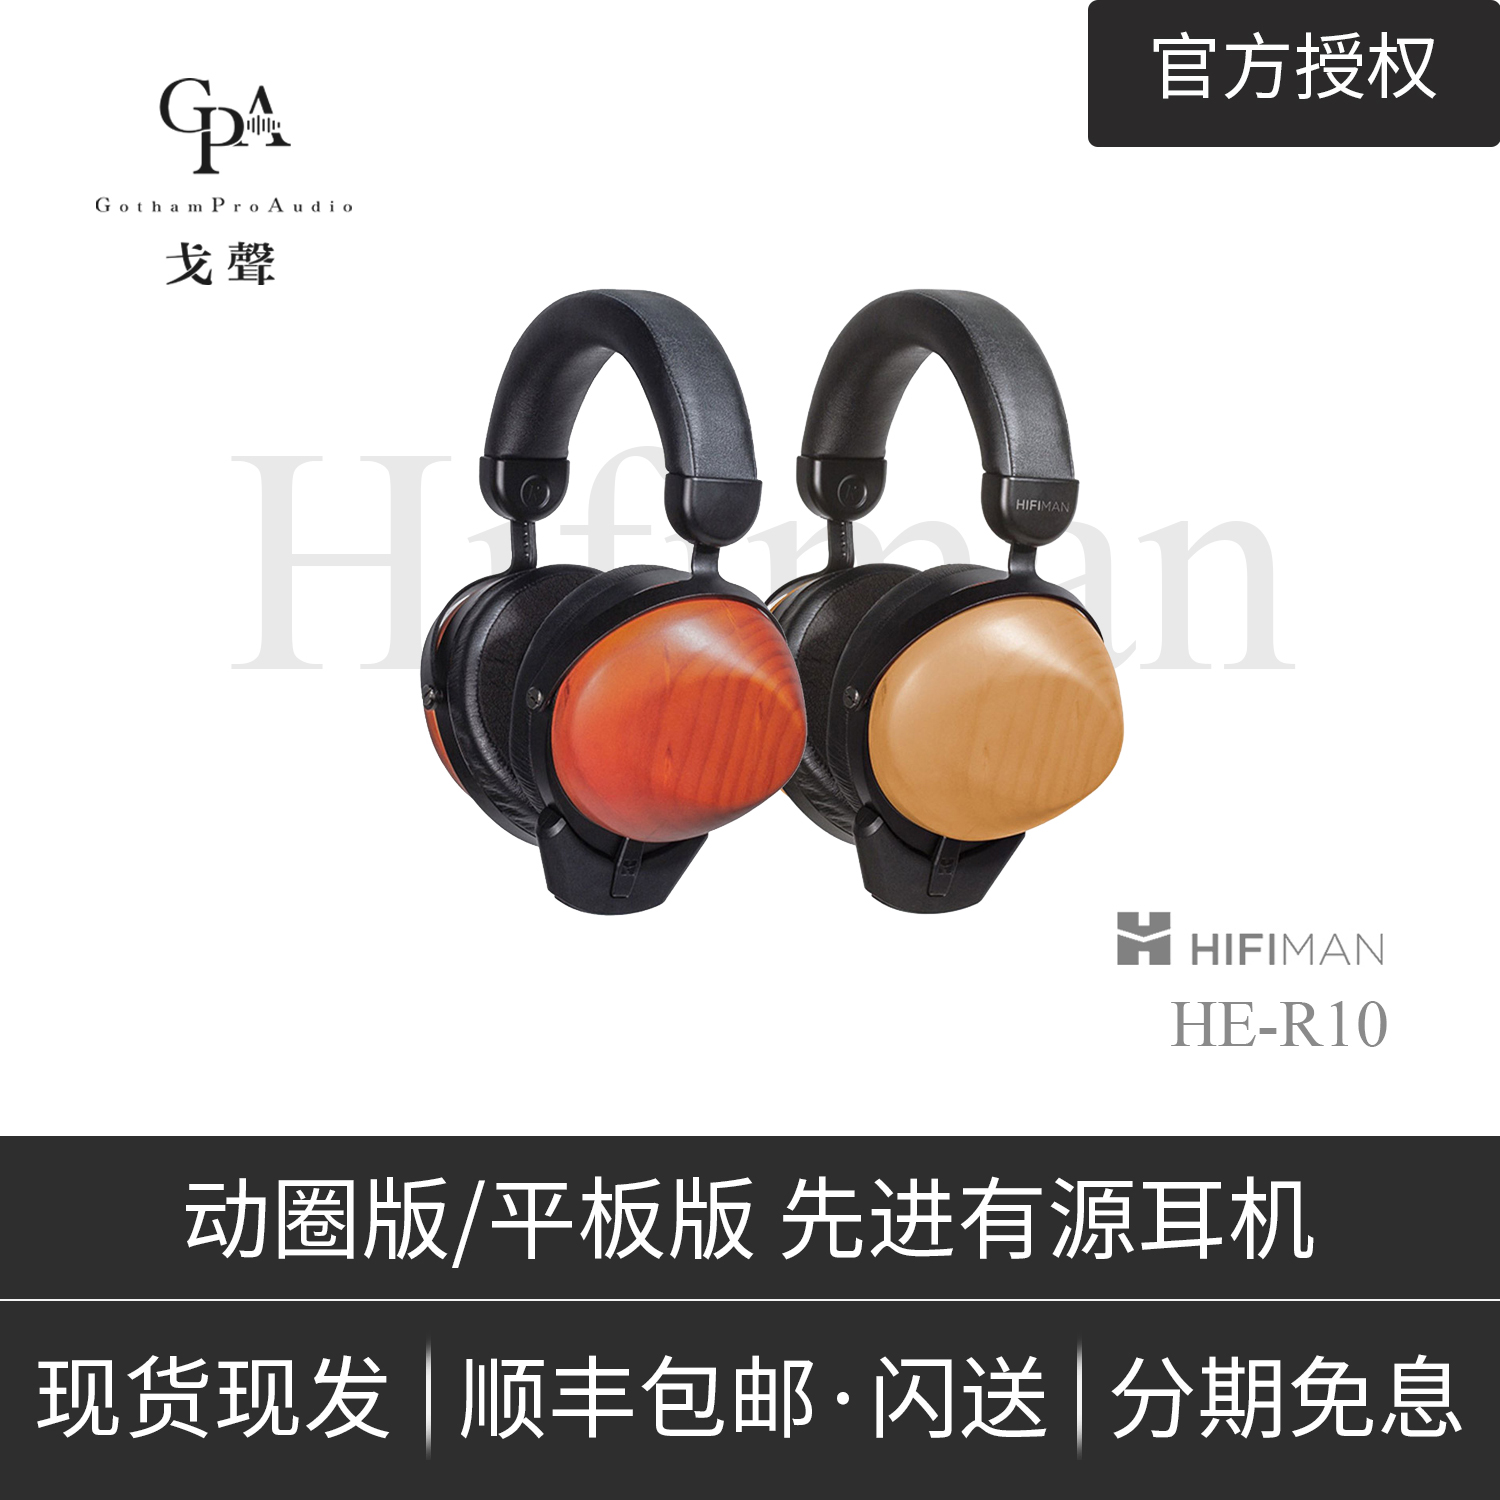 【戈聲】Hifiman HE-R10动圈平板单元旗舰级发烧HIFI头戴式耳机